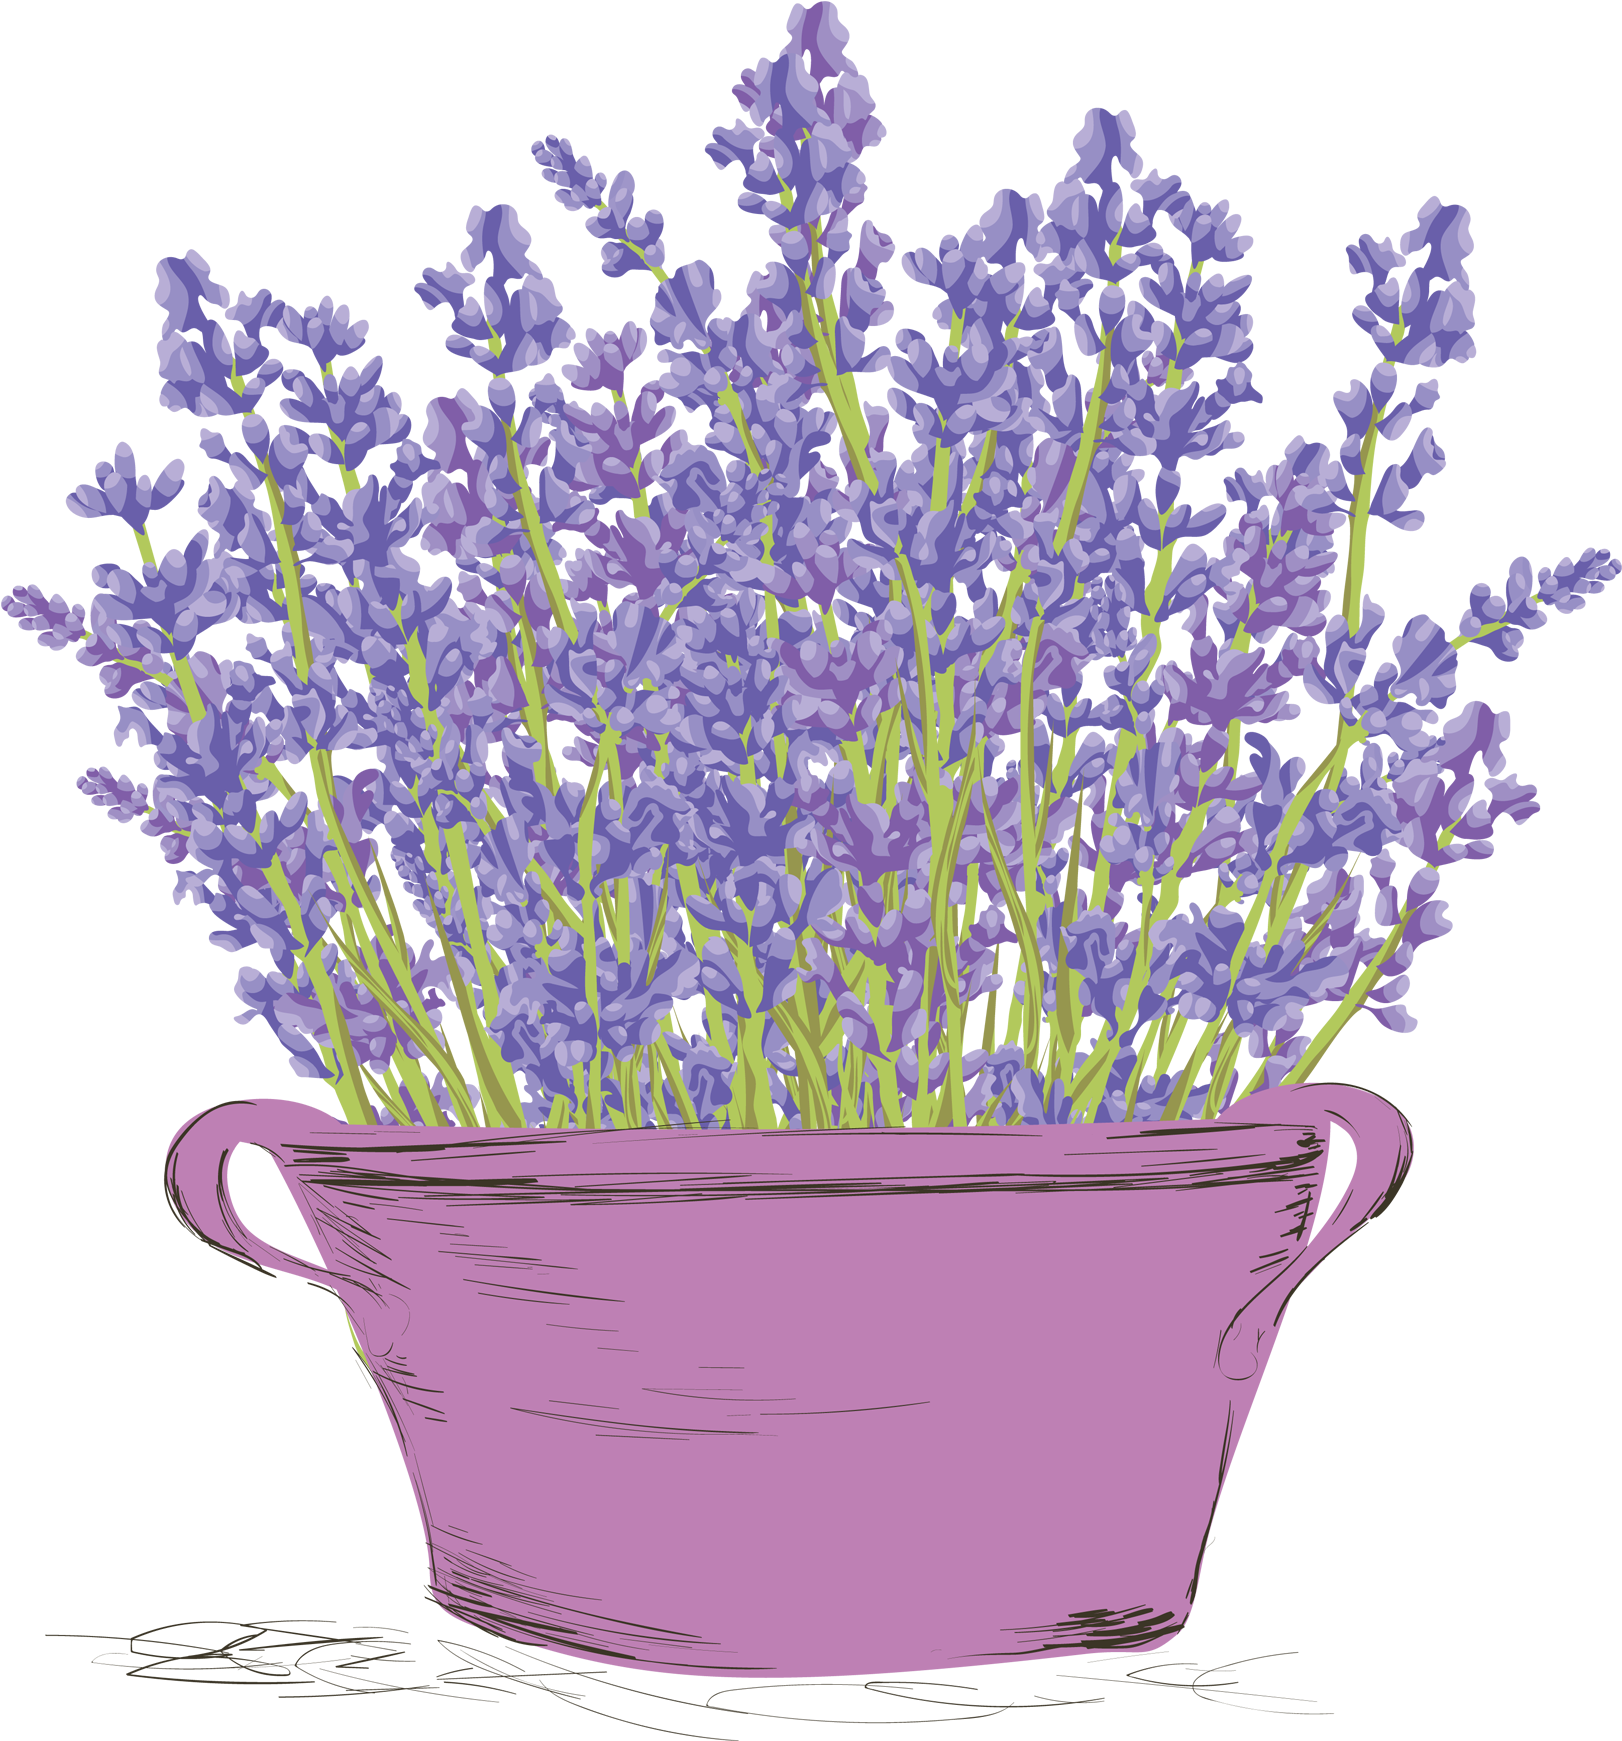 A Purple Plant In A Pot